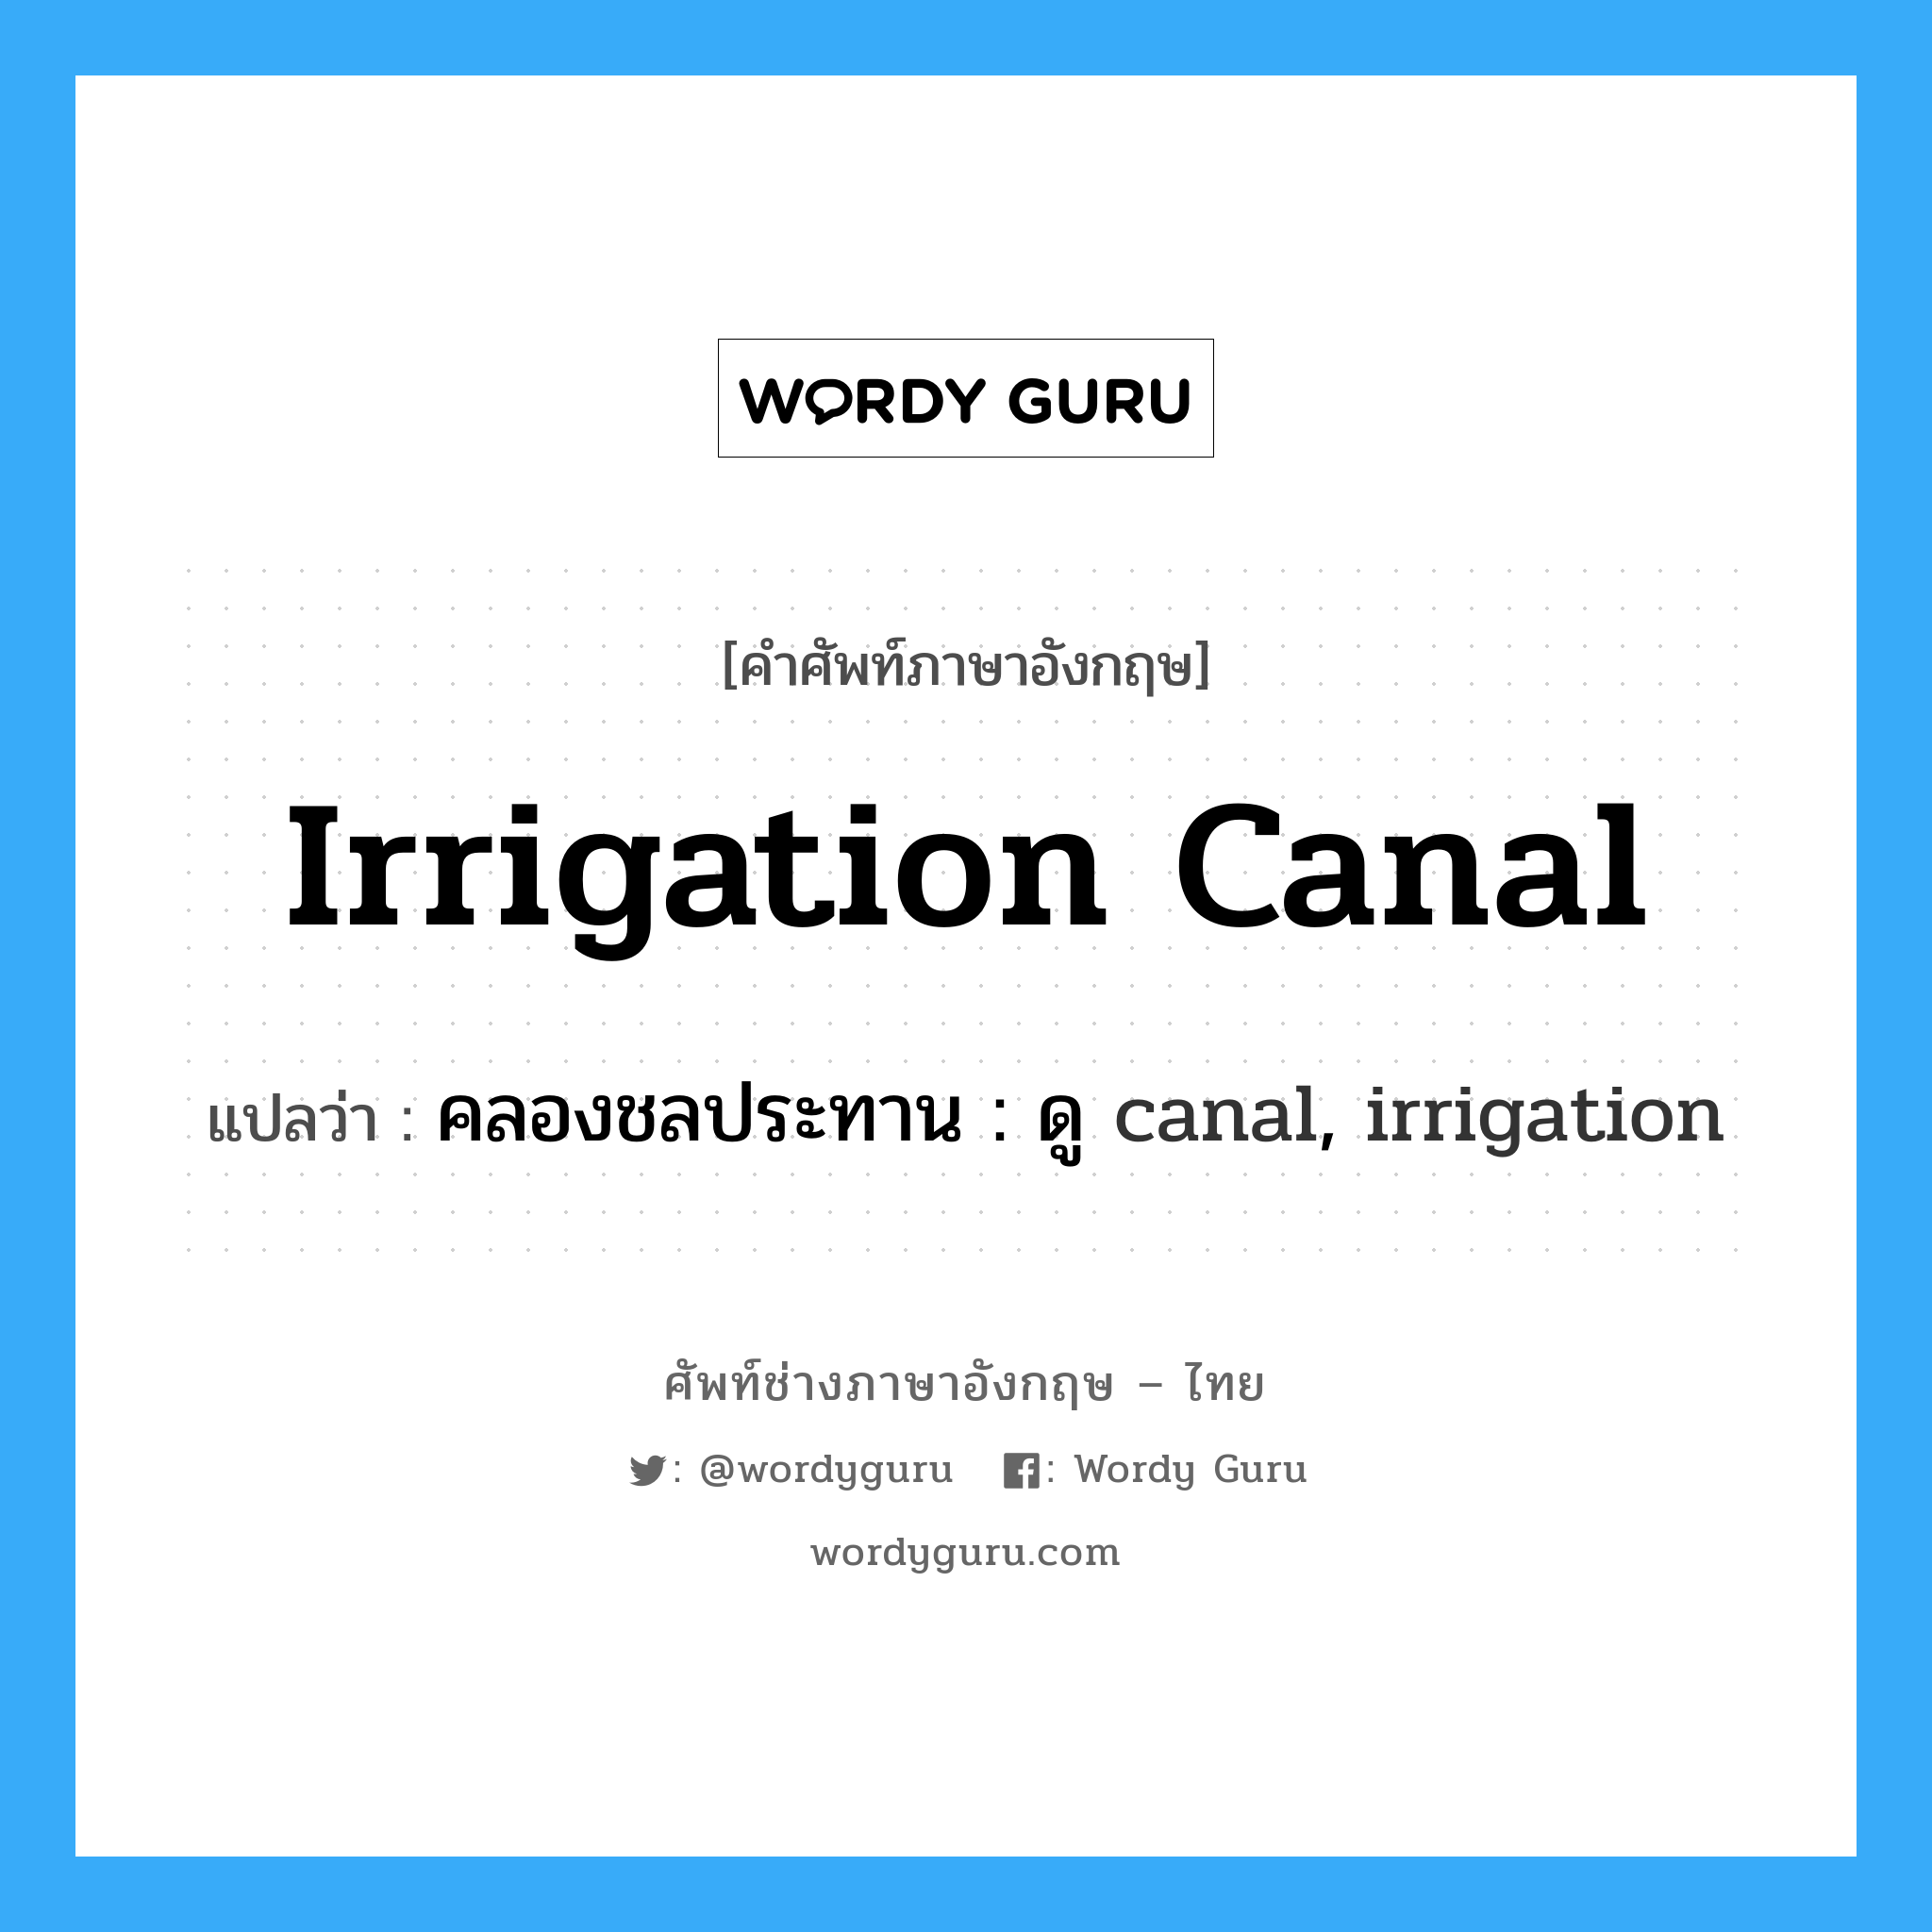 คลองชลประทาน : ดู canal, irrigation ภาษาอังกฤษ?, คำศัพท์ช่างภาษาอังกฤษ - ไทย คลองชลประทาน : ดู canal, irrigation คำศัพท์ภาษาอังกฤษ คลองชลประทาน : ดู canal, irrigation แปลว่า irrigation canal